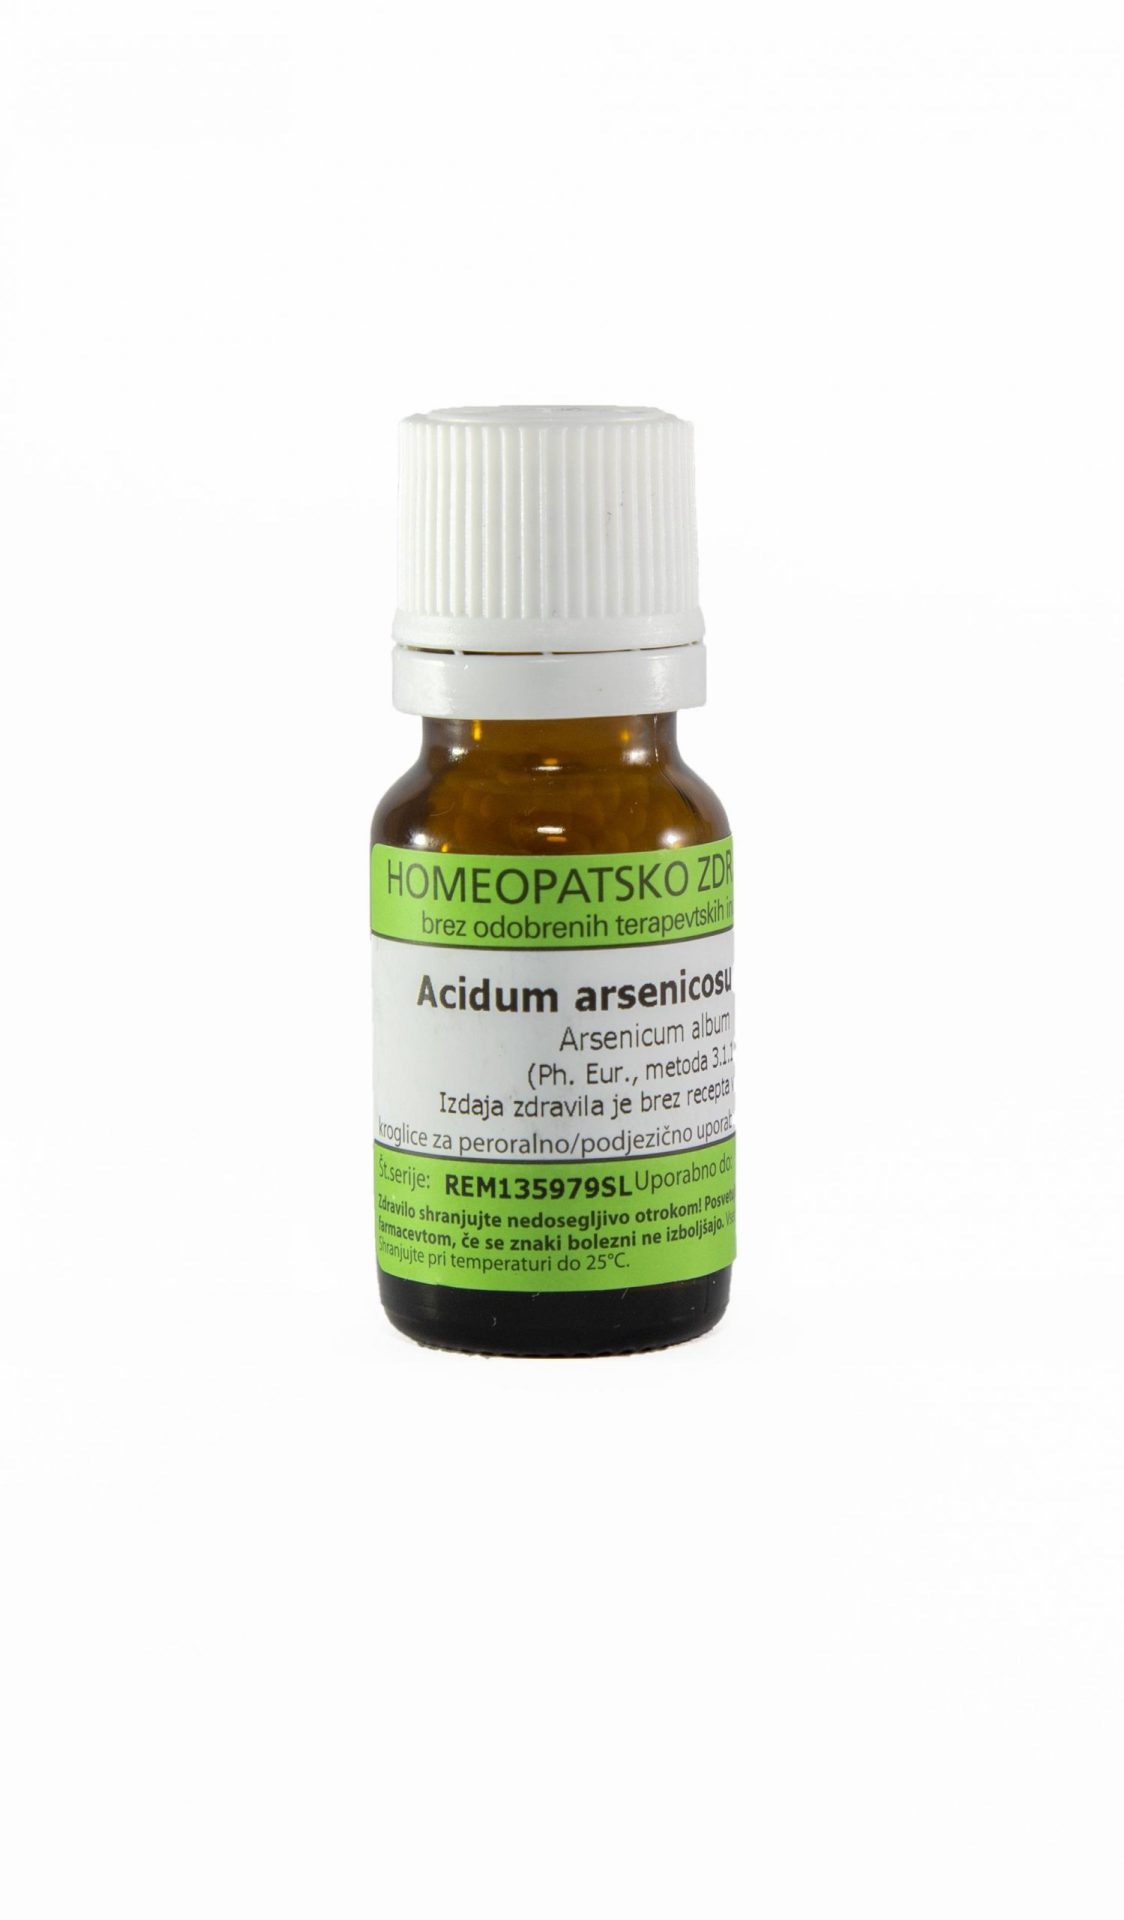 Acidum arsenicosum C6 homeopatske kroglice, 1 g